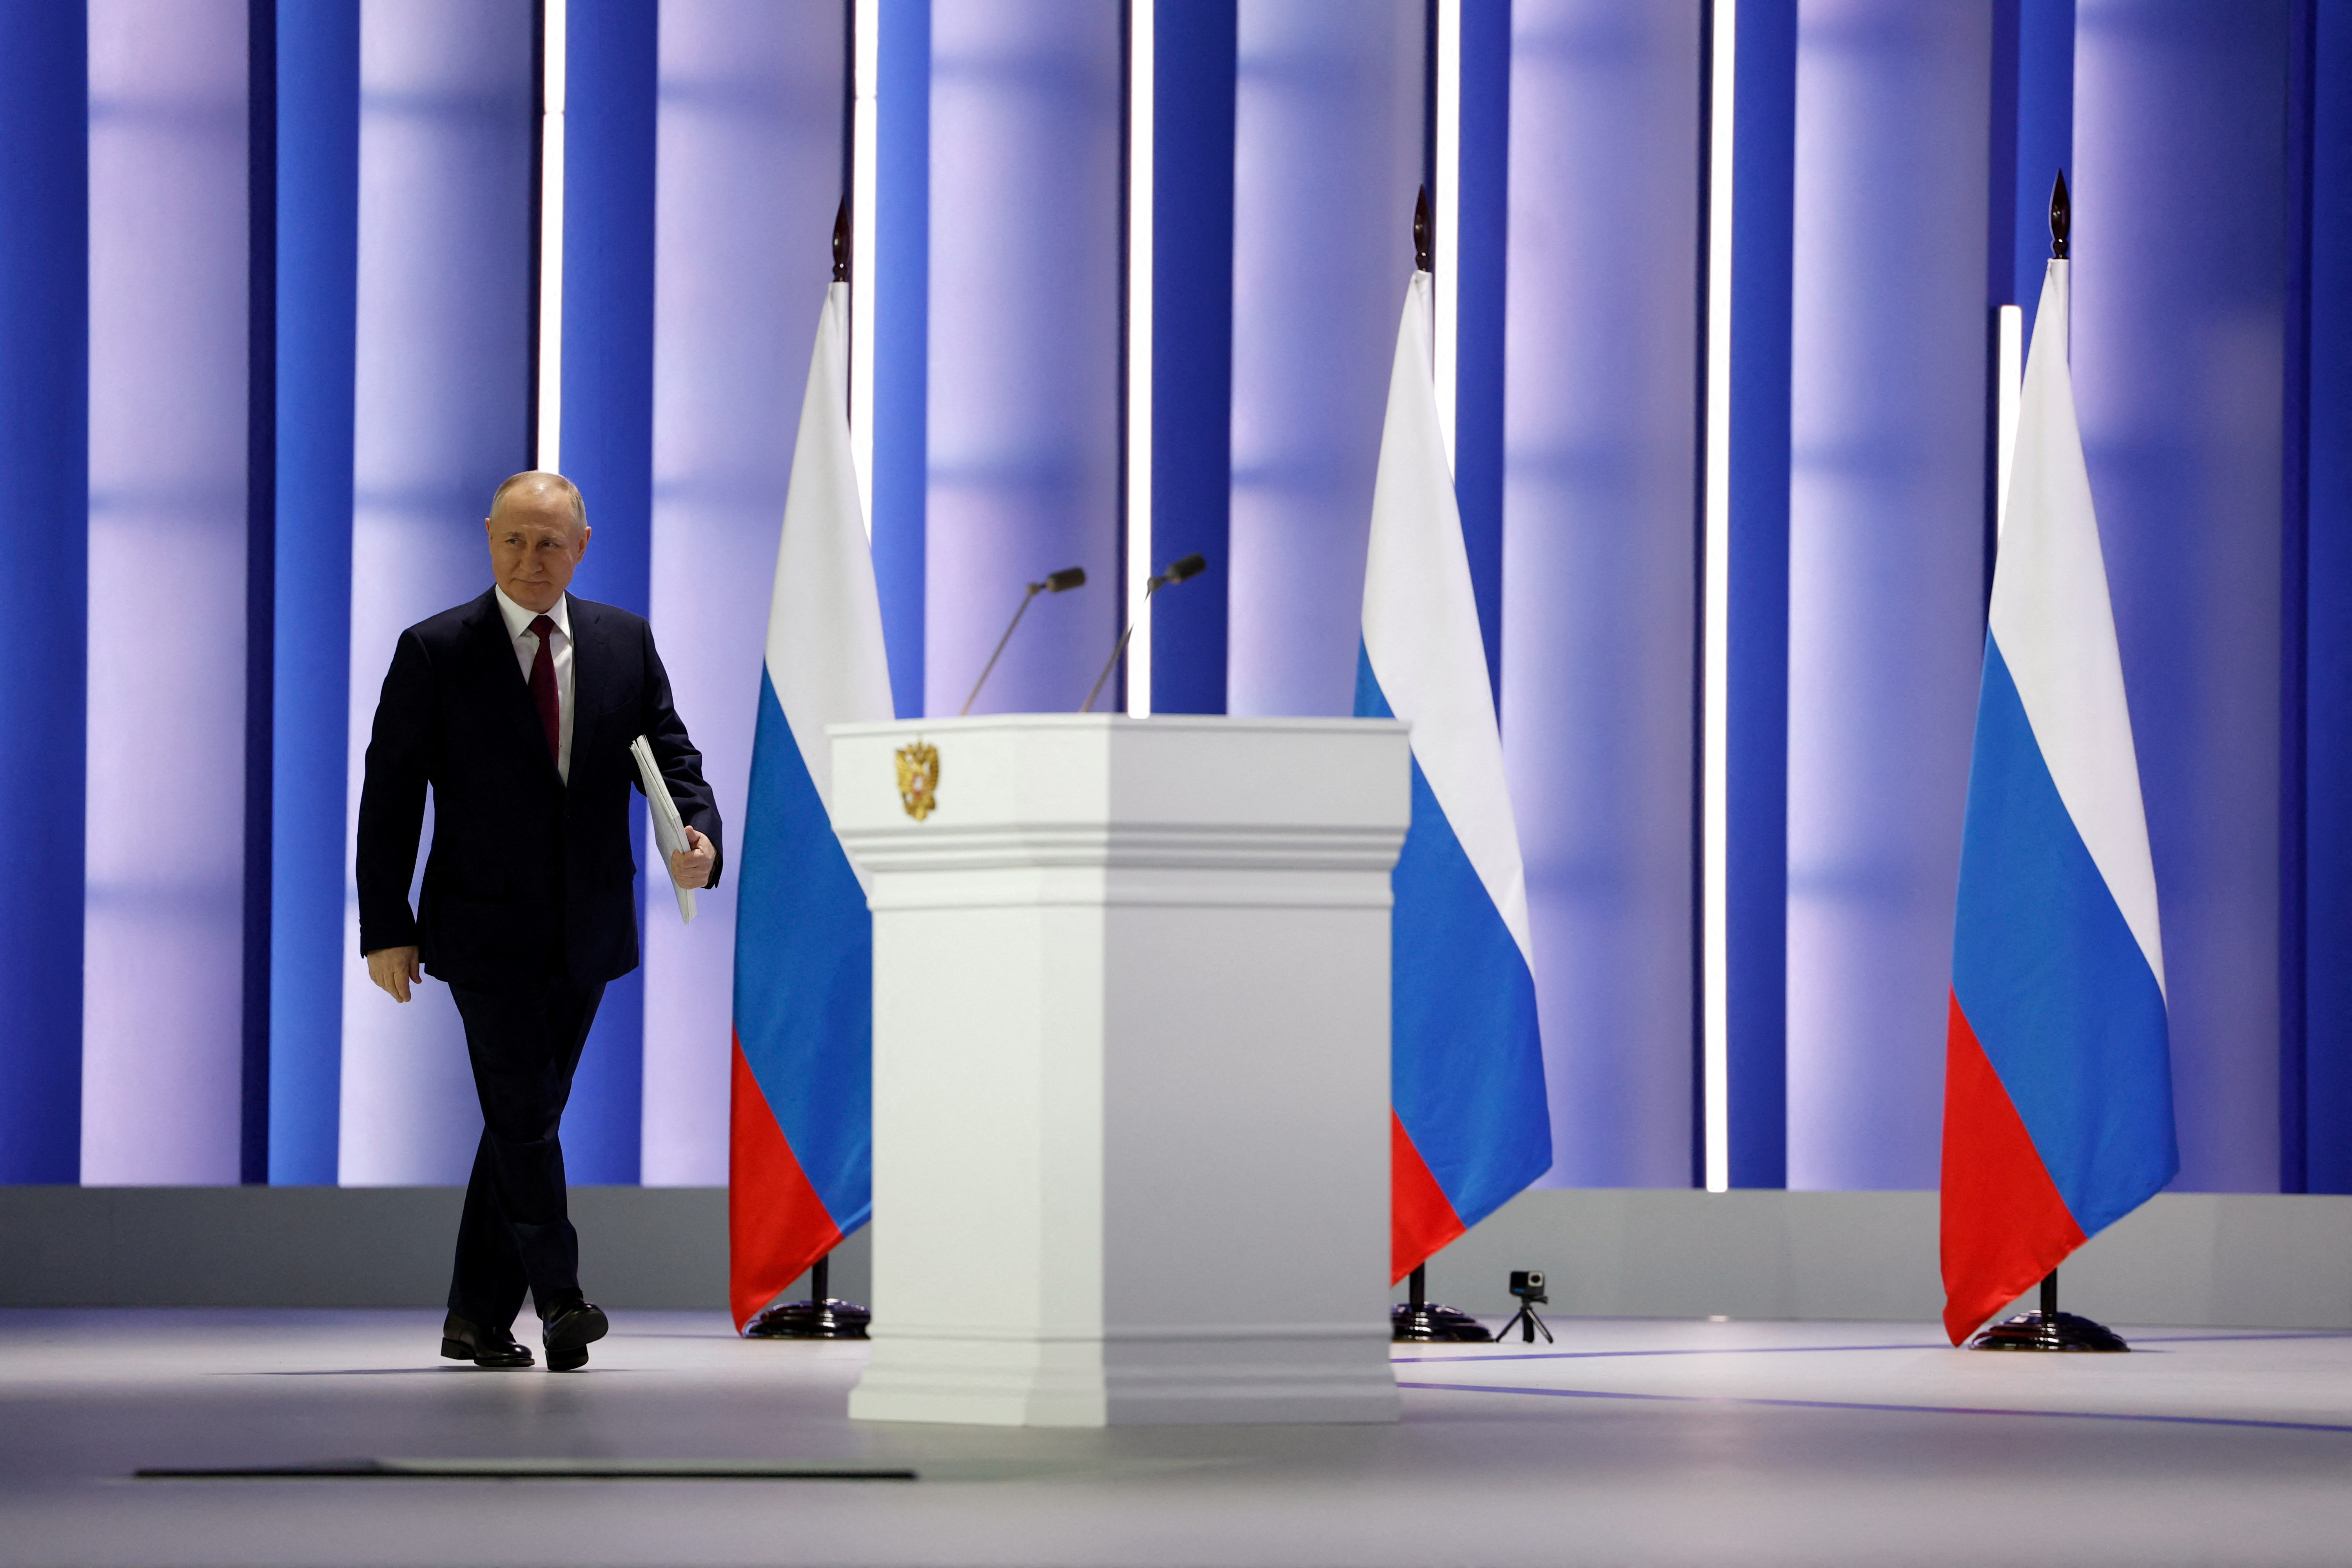 El presidente camina al atril para dar su discurso